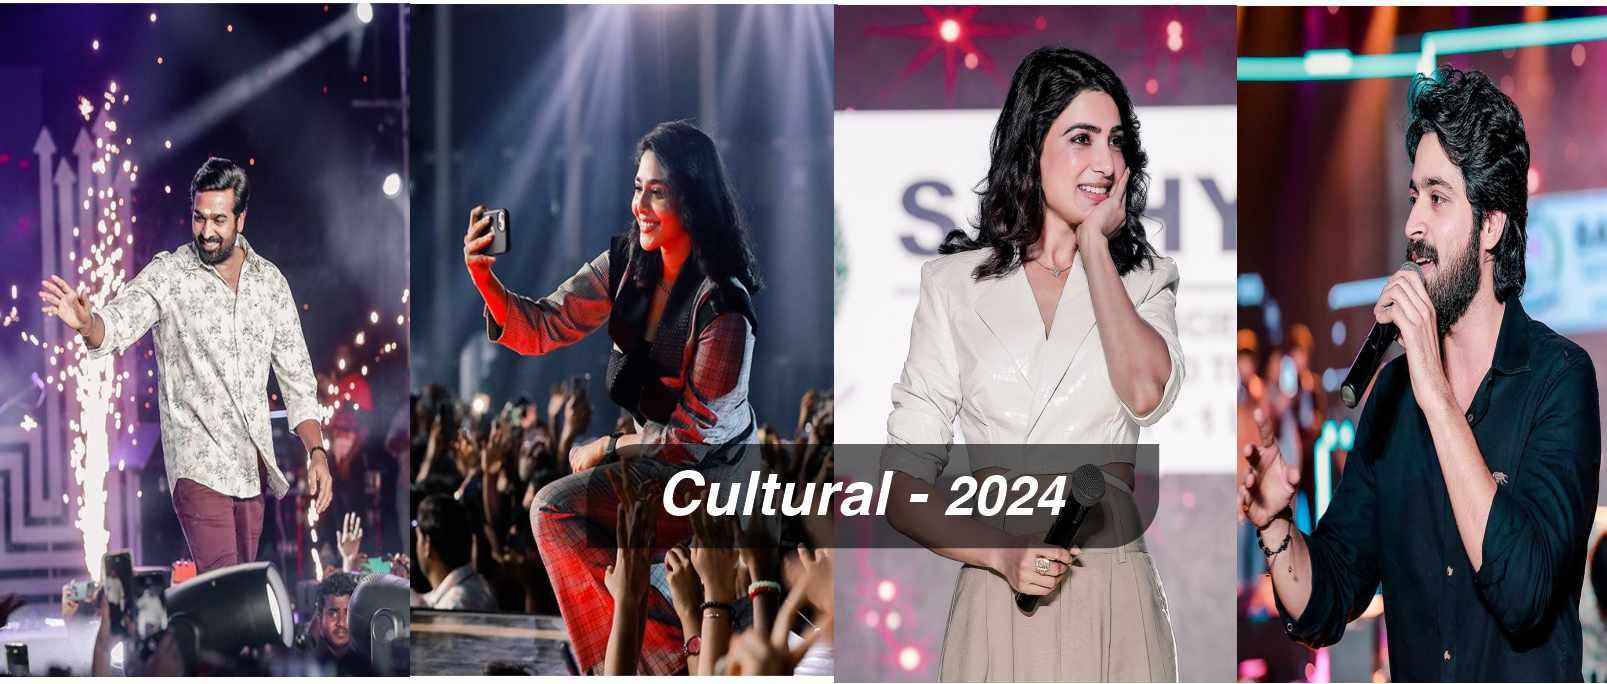 Cultural 2024